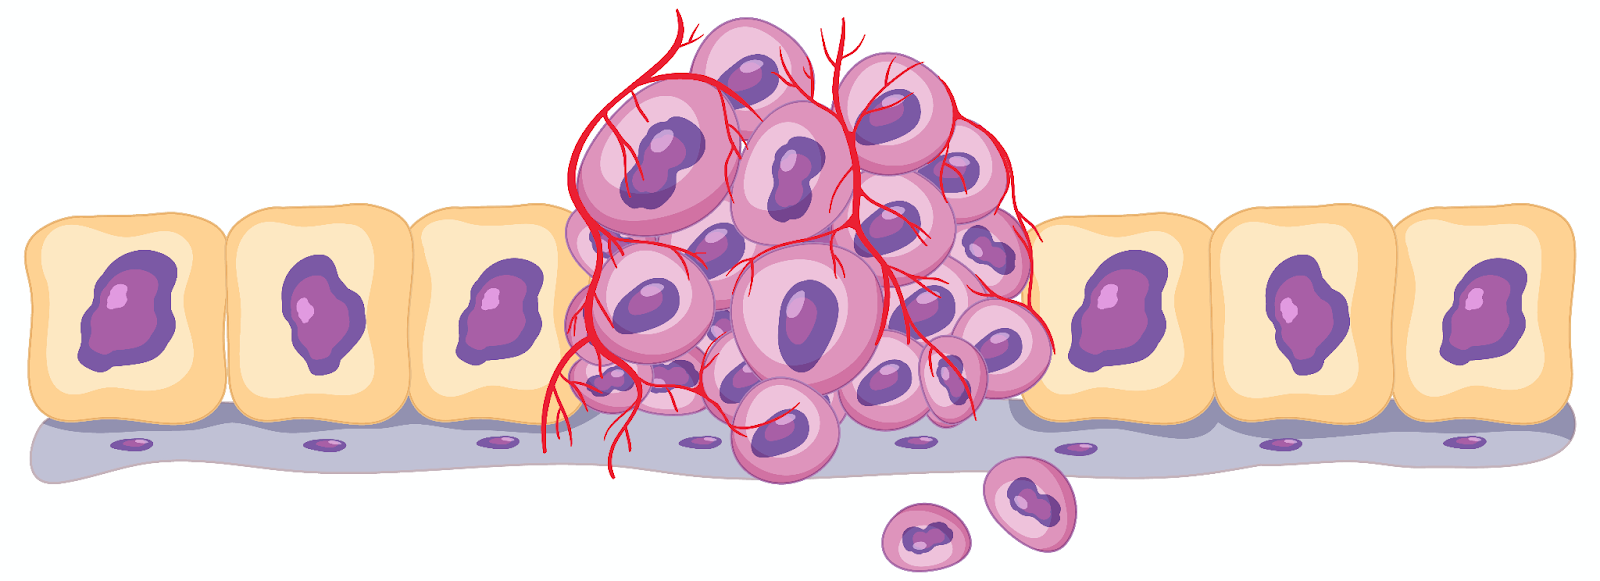 ilustração de uma célula cancerígena isolada em um fundo branco